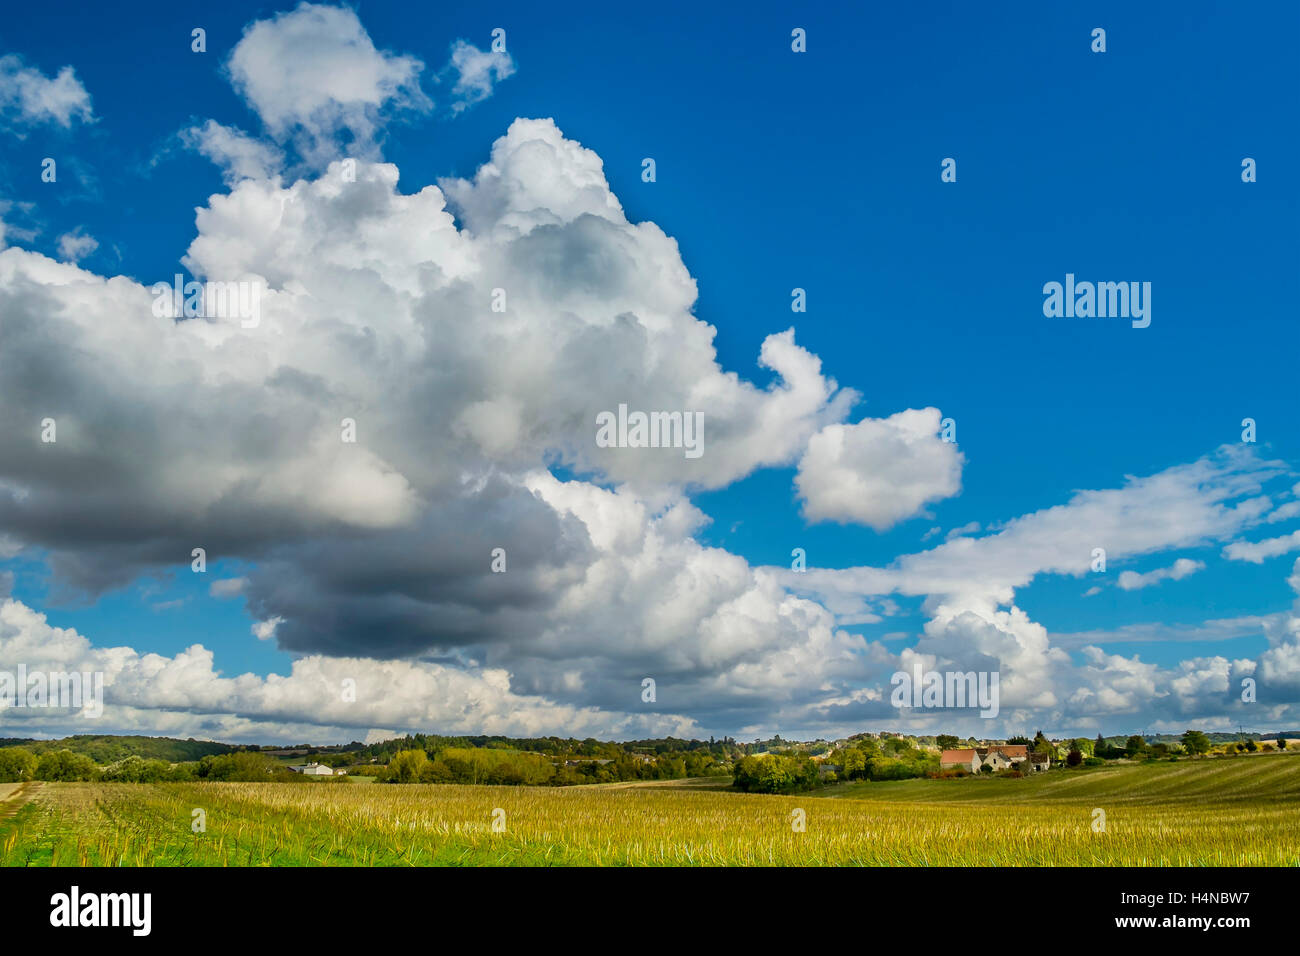 Sommerhimmel mit Cumulus und Cumulonimbus Calvus regen Wolken - Frankreich. Stockfoto